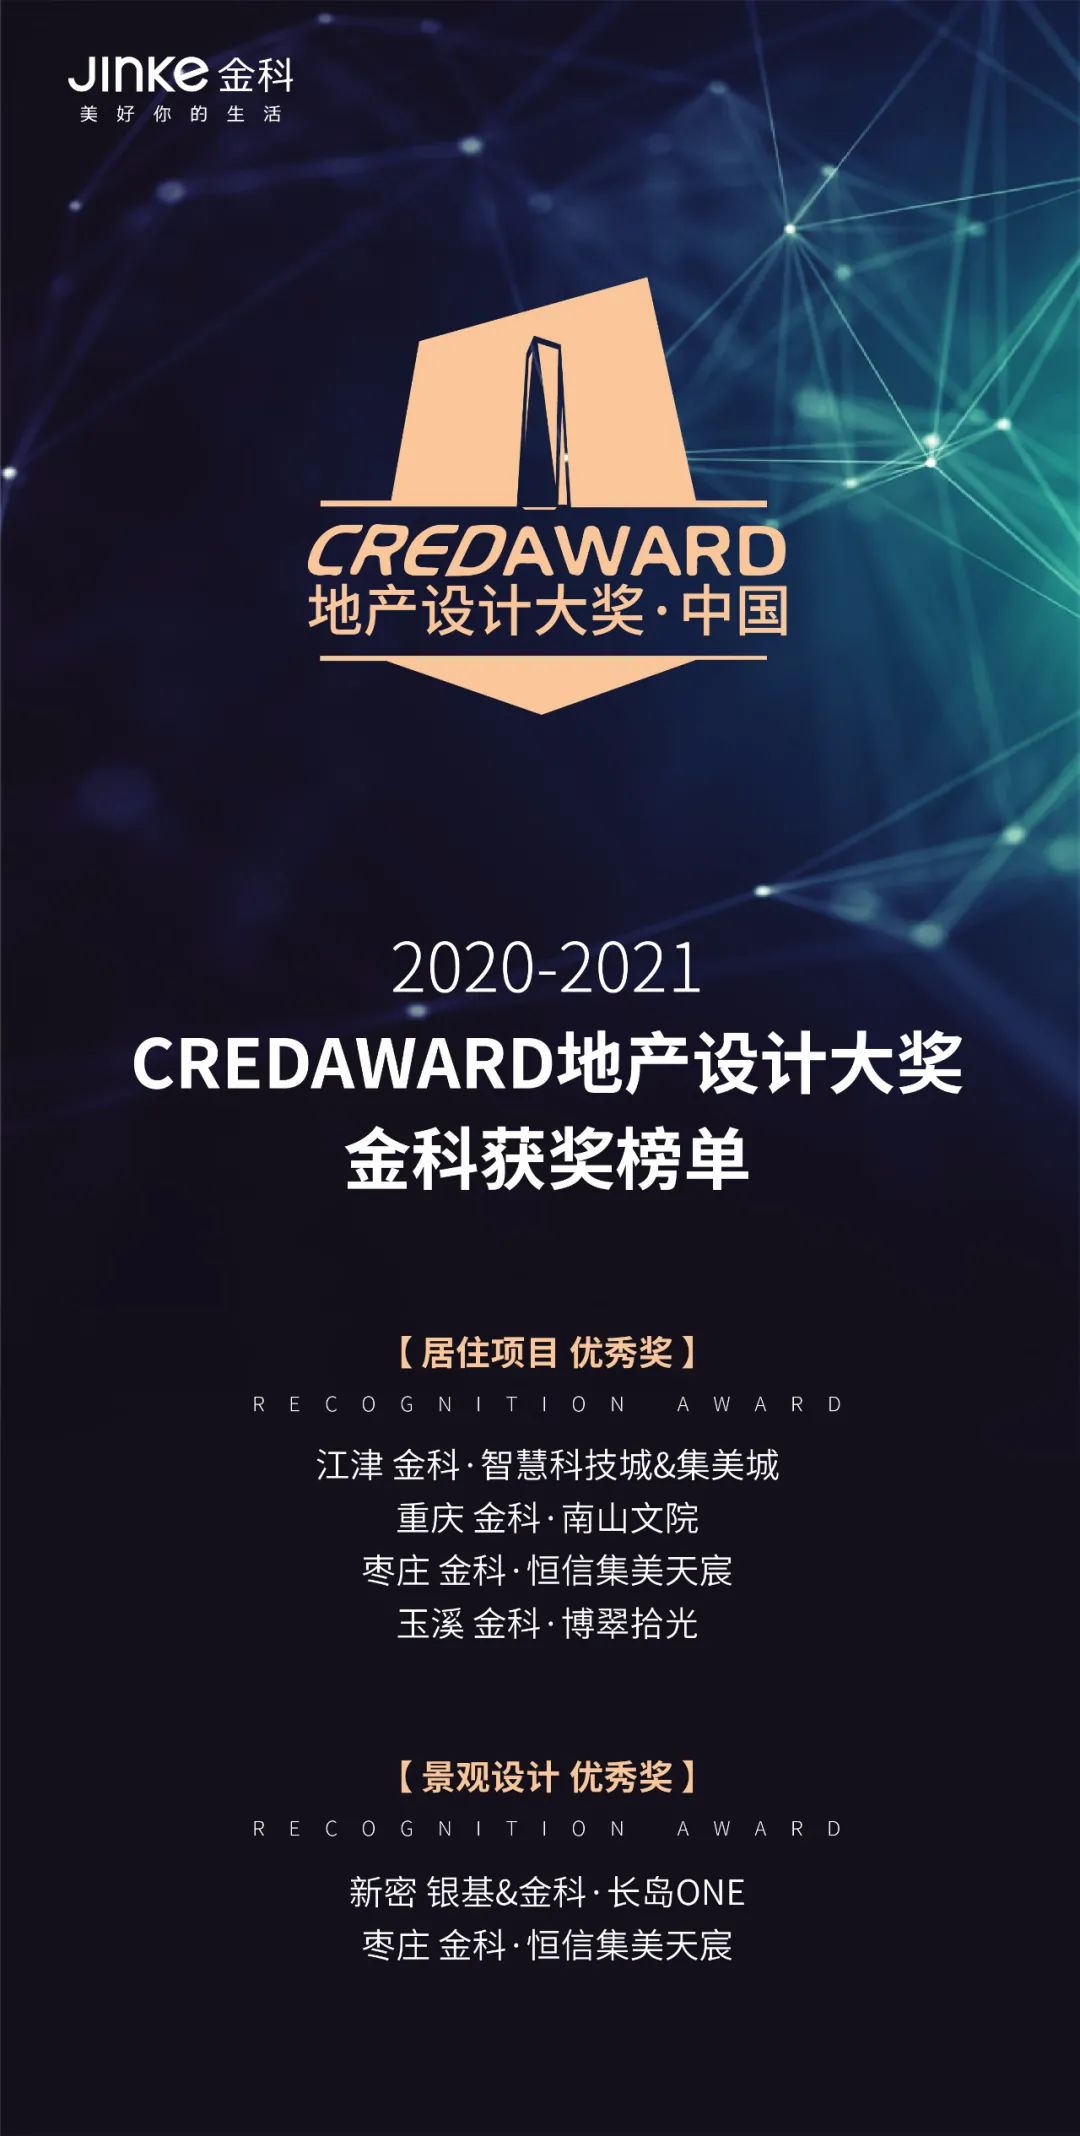 金科斩获第七届“CREDAWARD地产设计大奖·中国”6项大奖